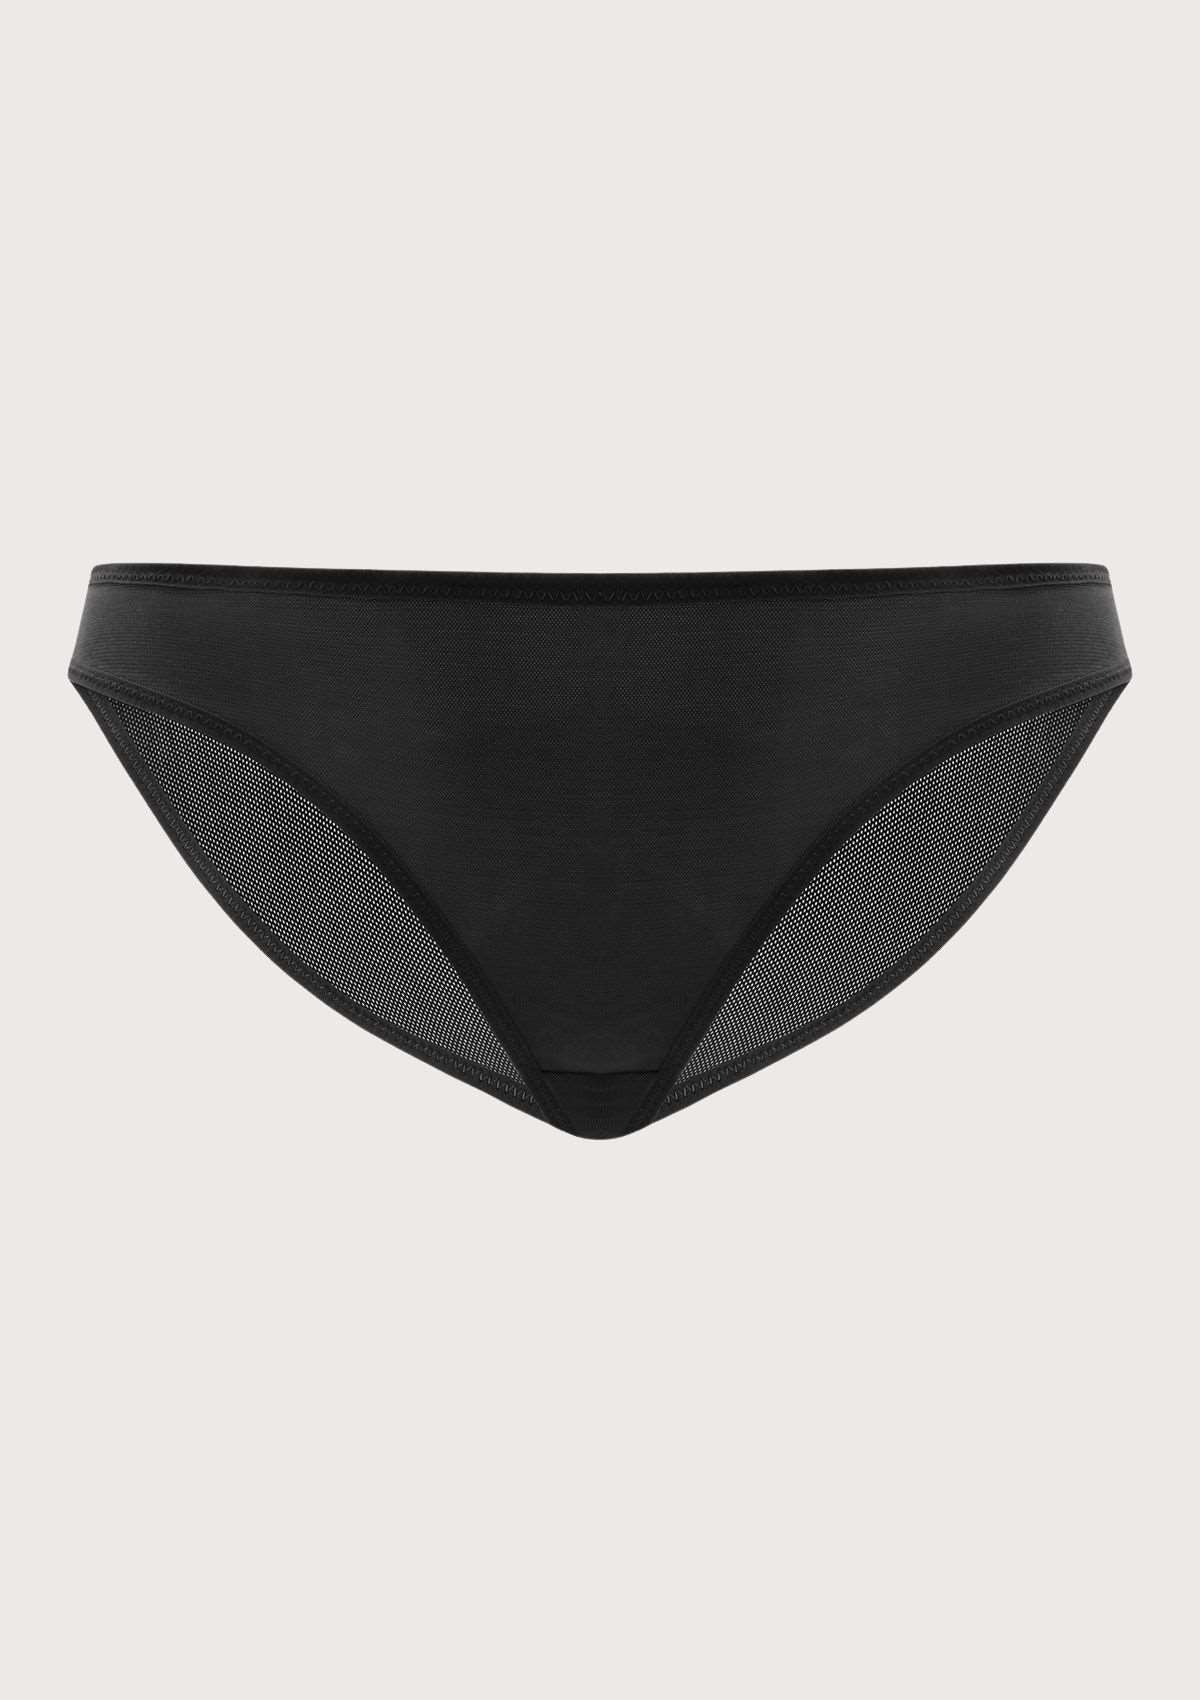 HSIA Billie Smooth Sheer Mesh Lightweight Soft Comfy Bikini Underwear - M / Dark Green